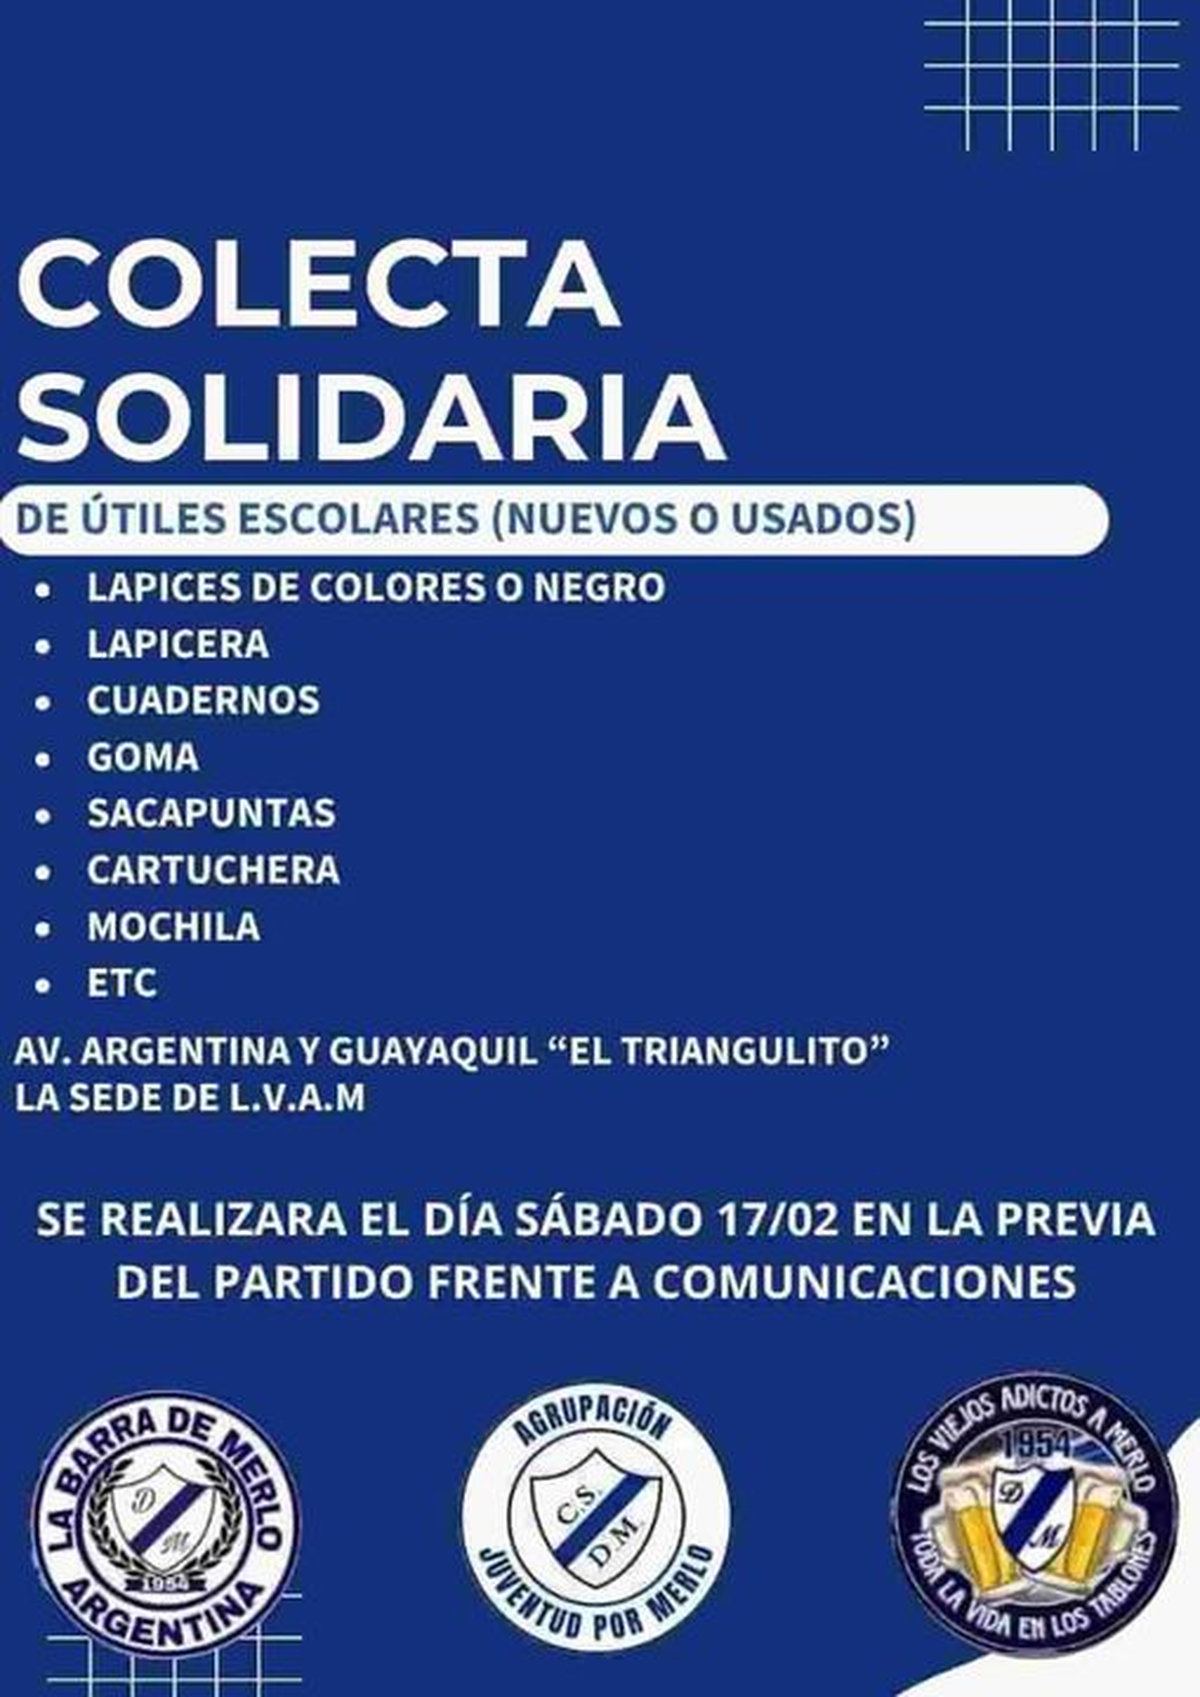 La colecta solidaria del Deportivo Merlo.